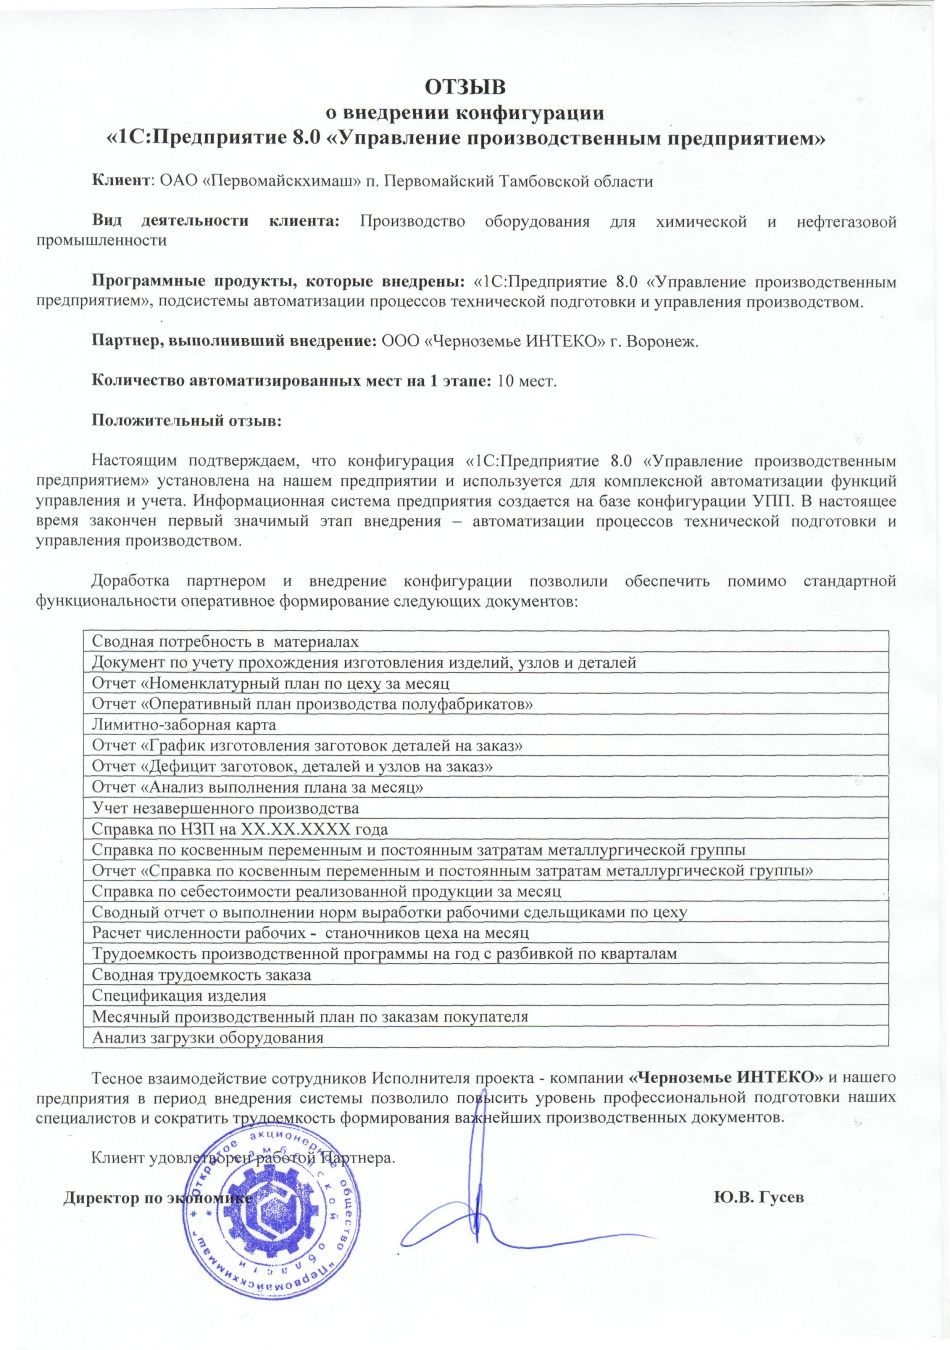 Отзыв компании "Первомайскхиммаш" о 1-м этапе внедрения конфигурации "1С:Управление производственным предприятием"